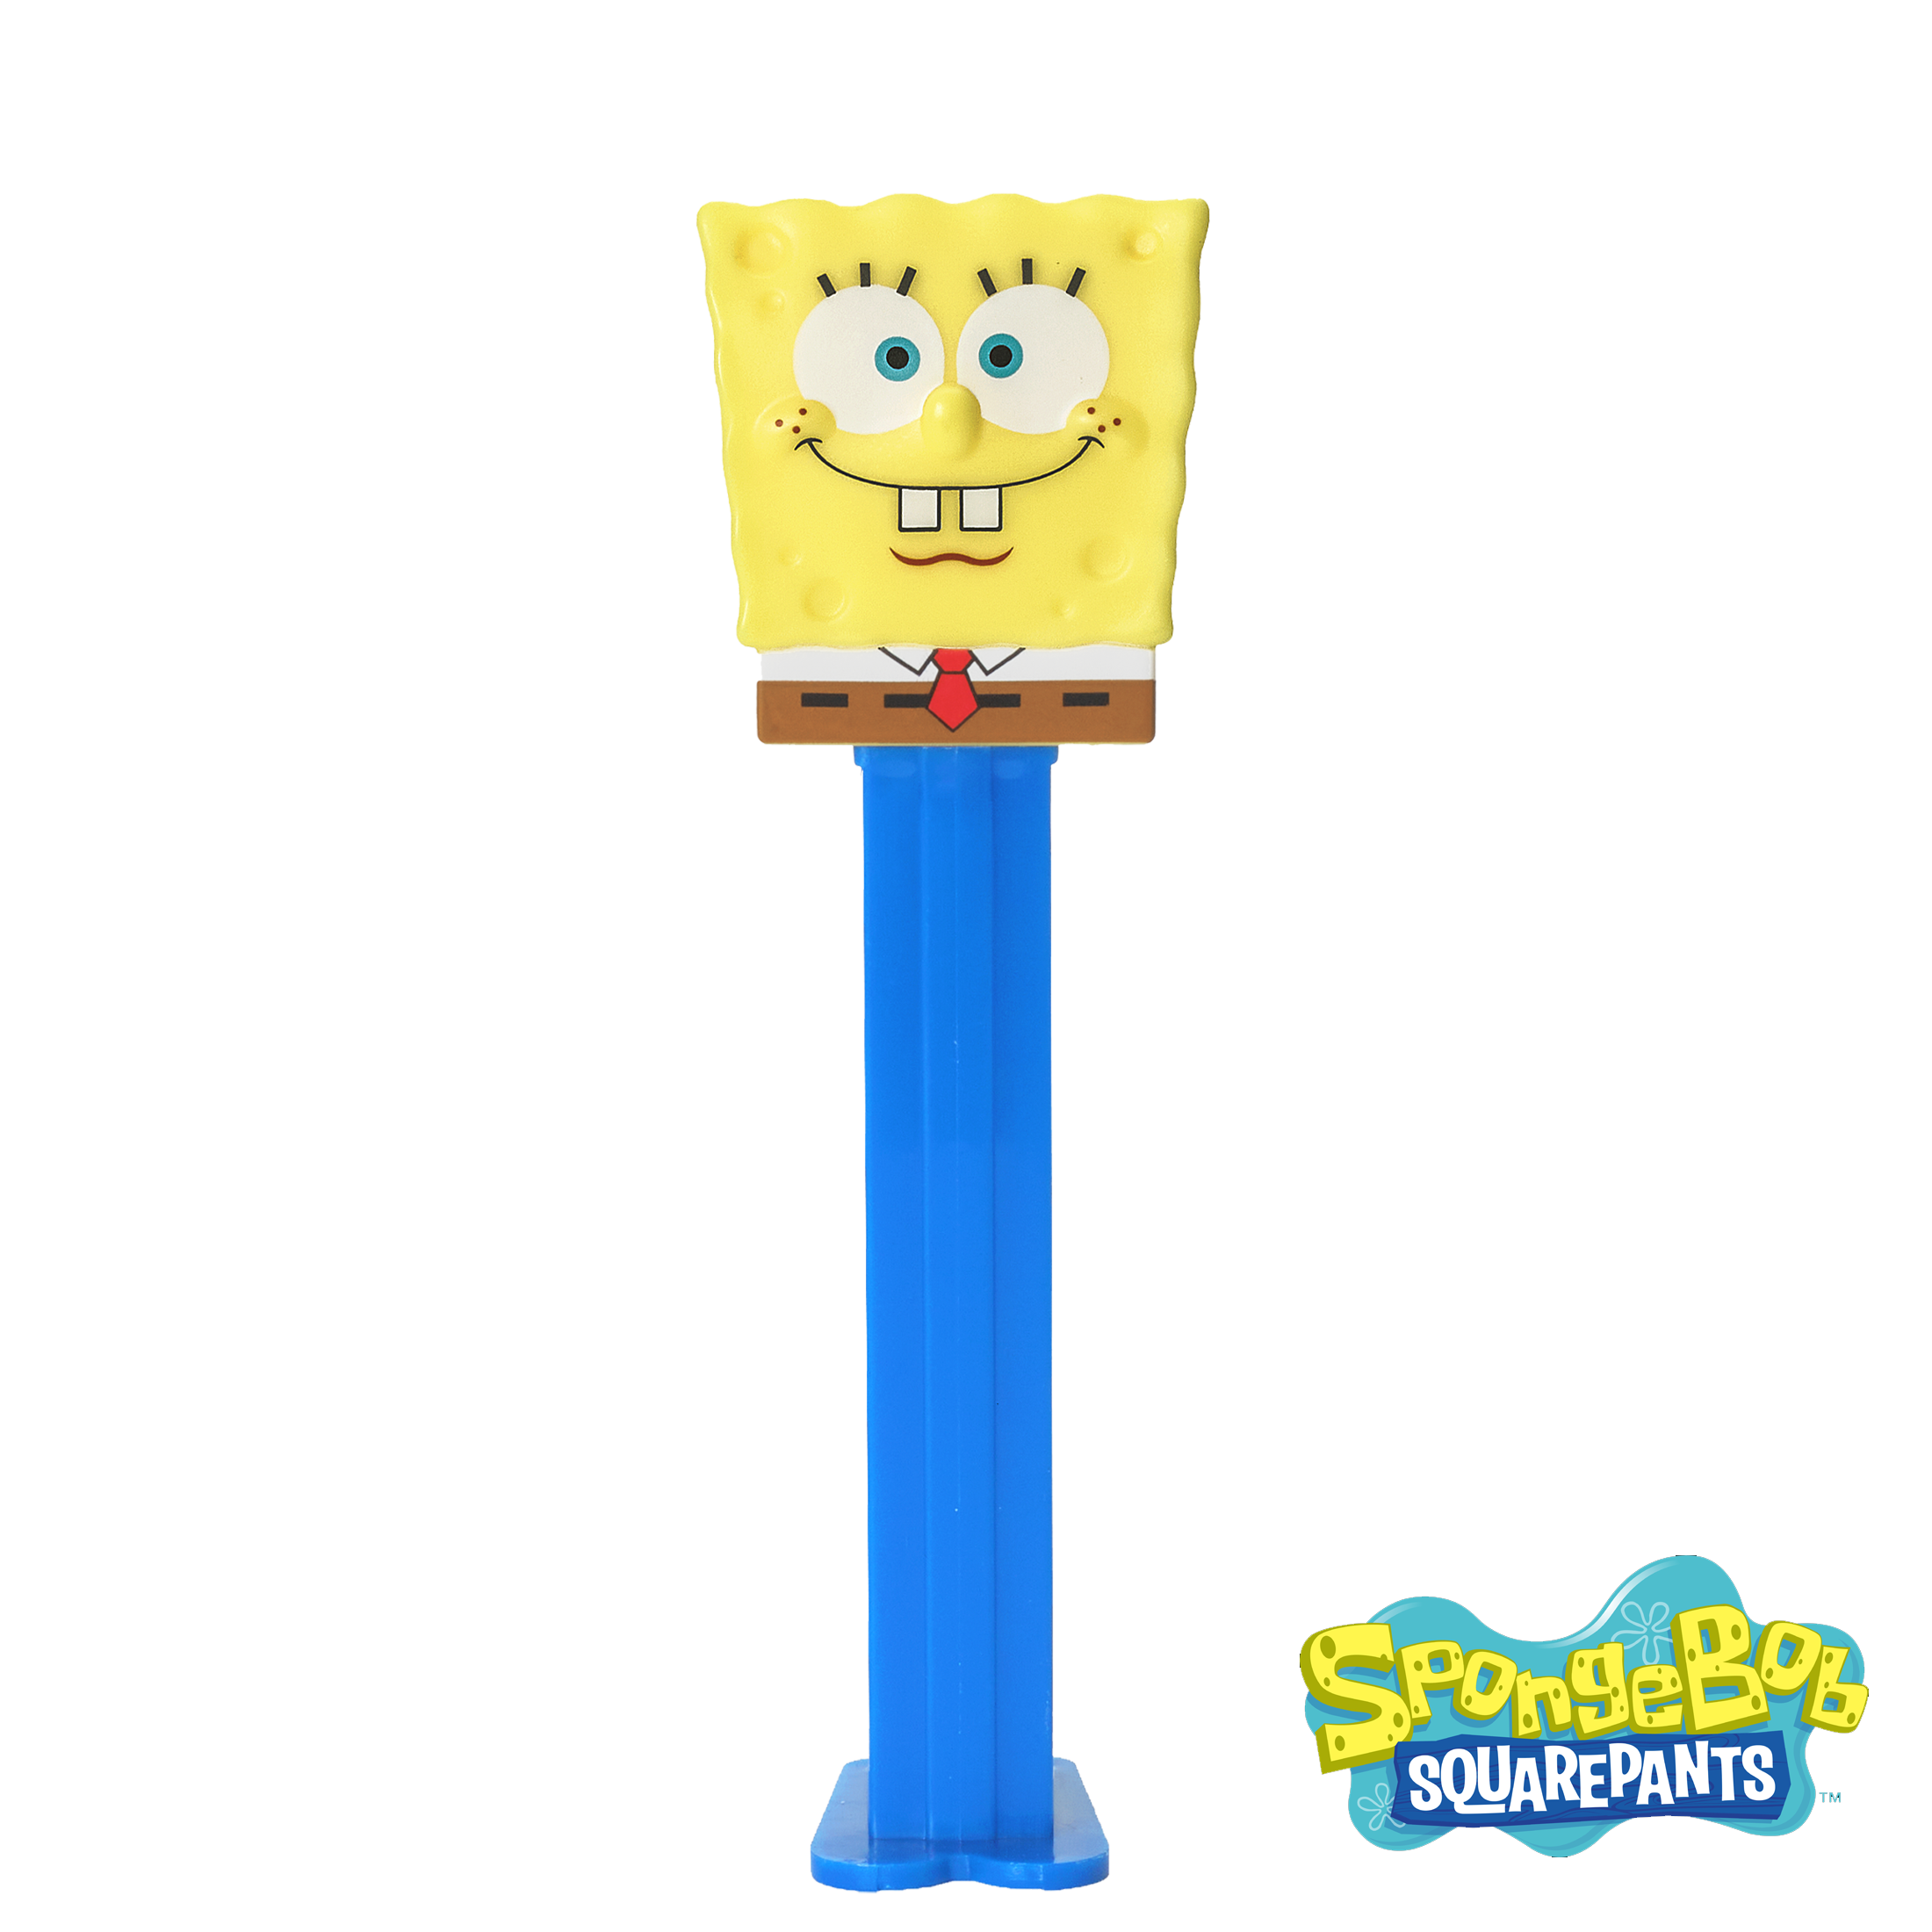 SpongeBob Squarepants (Smiling)